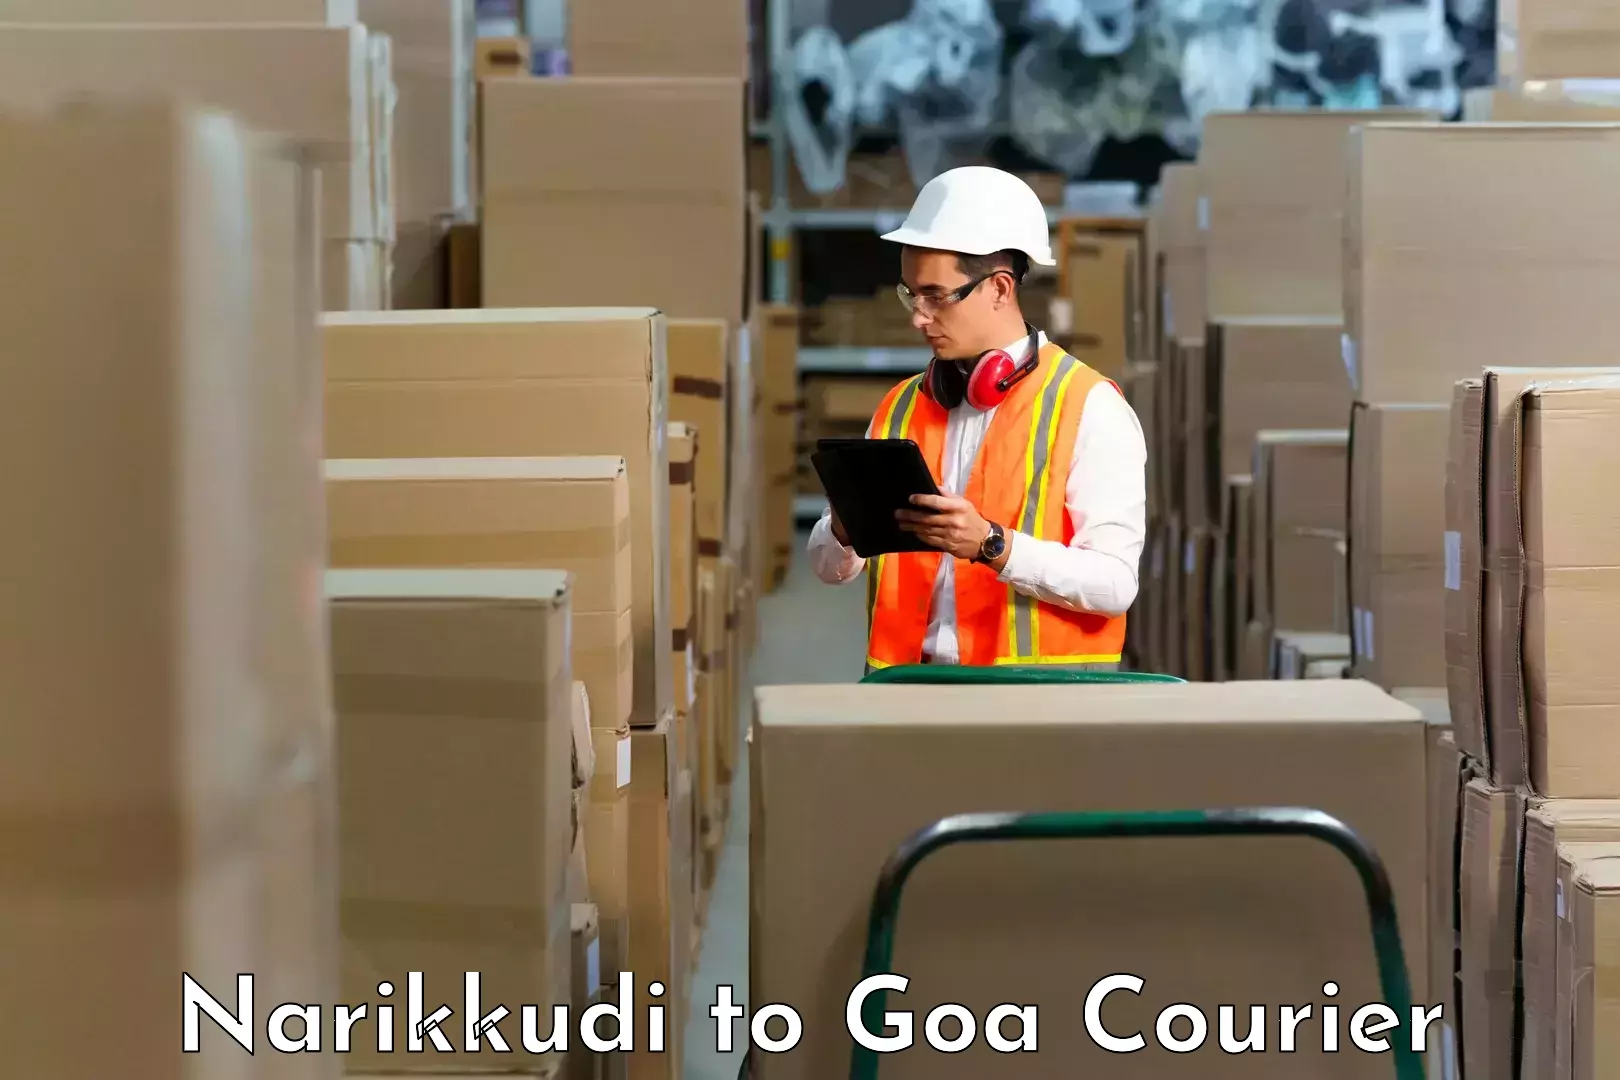 Optimized delivery routes Narikkudi to IIT Goa